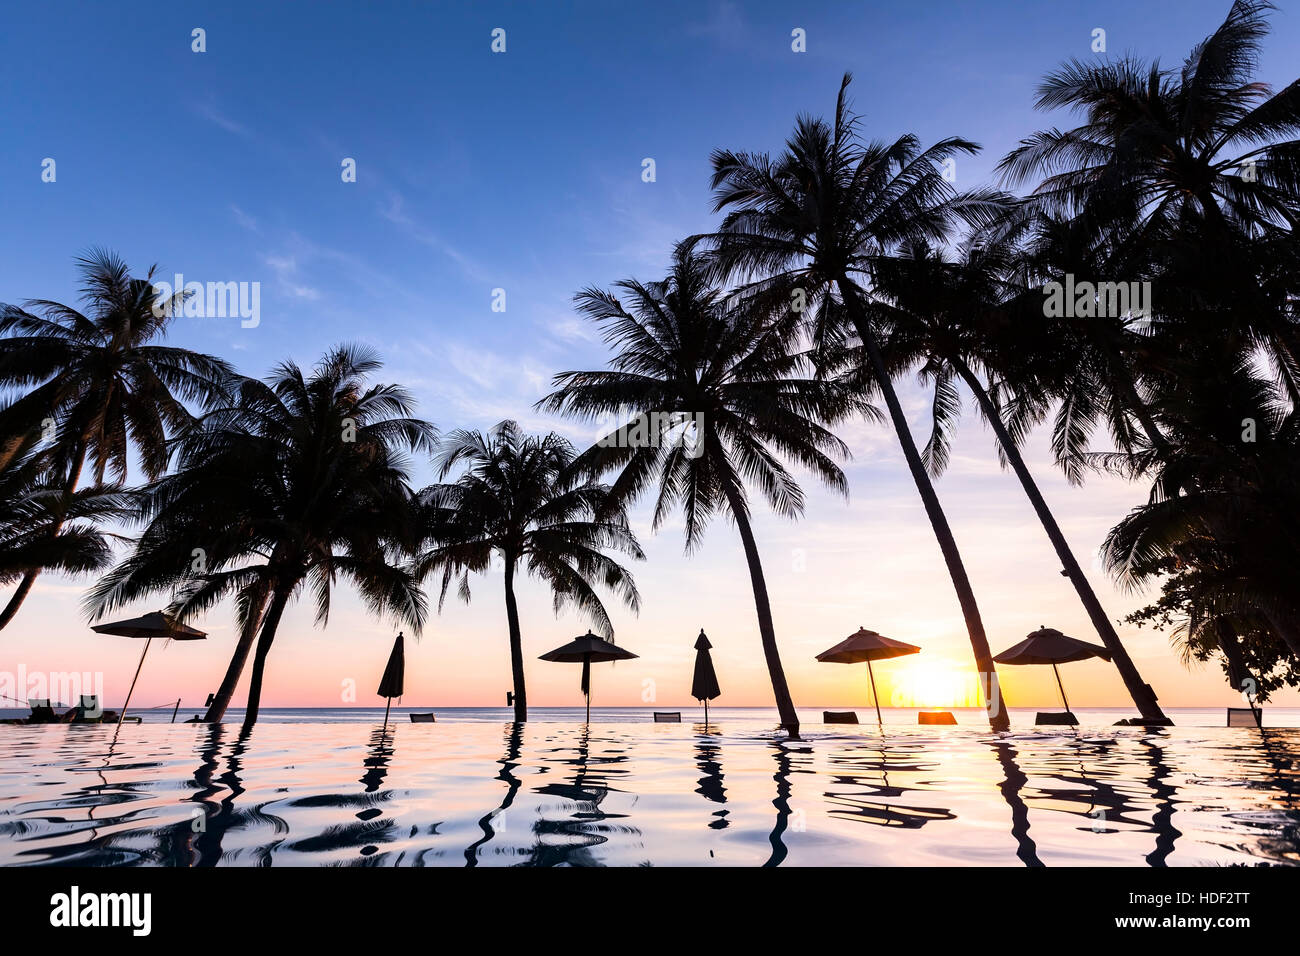 Le palme e la piscina a sfioro in un lussuoso hotel fronte spiaggia tropicale e hotel resort, tramonto Foto Stock